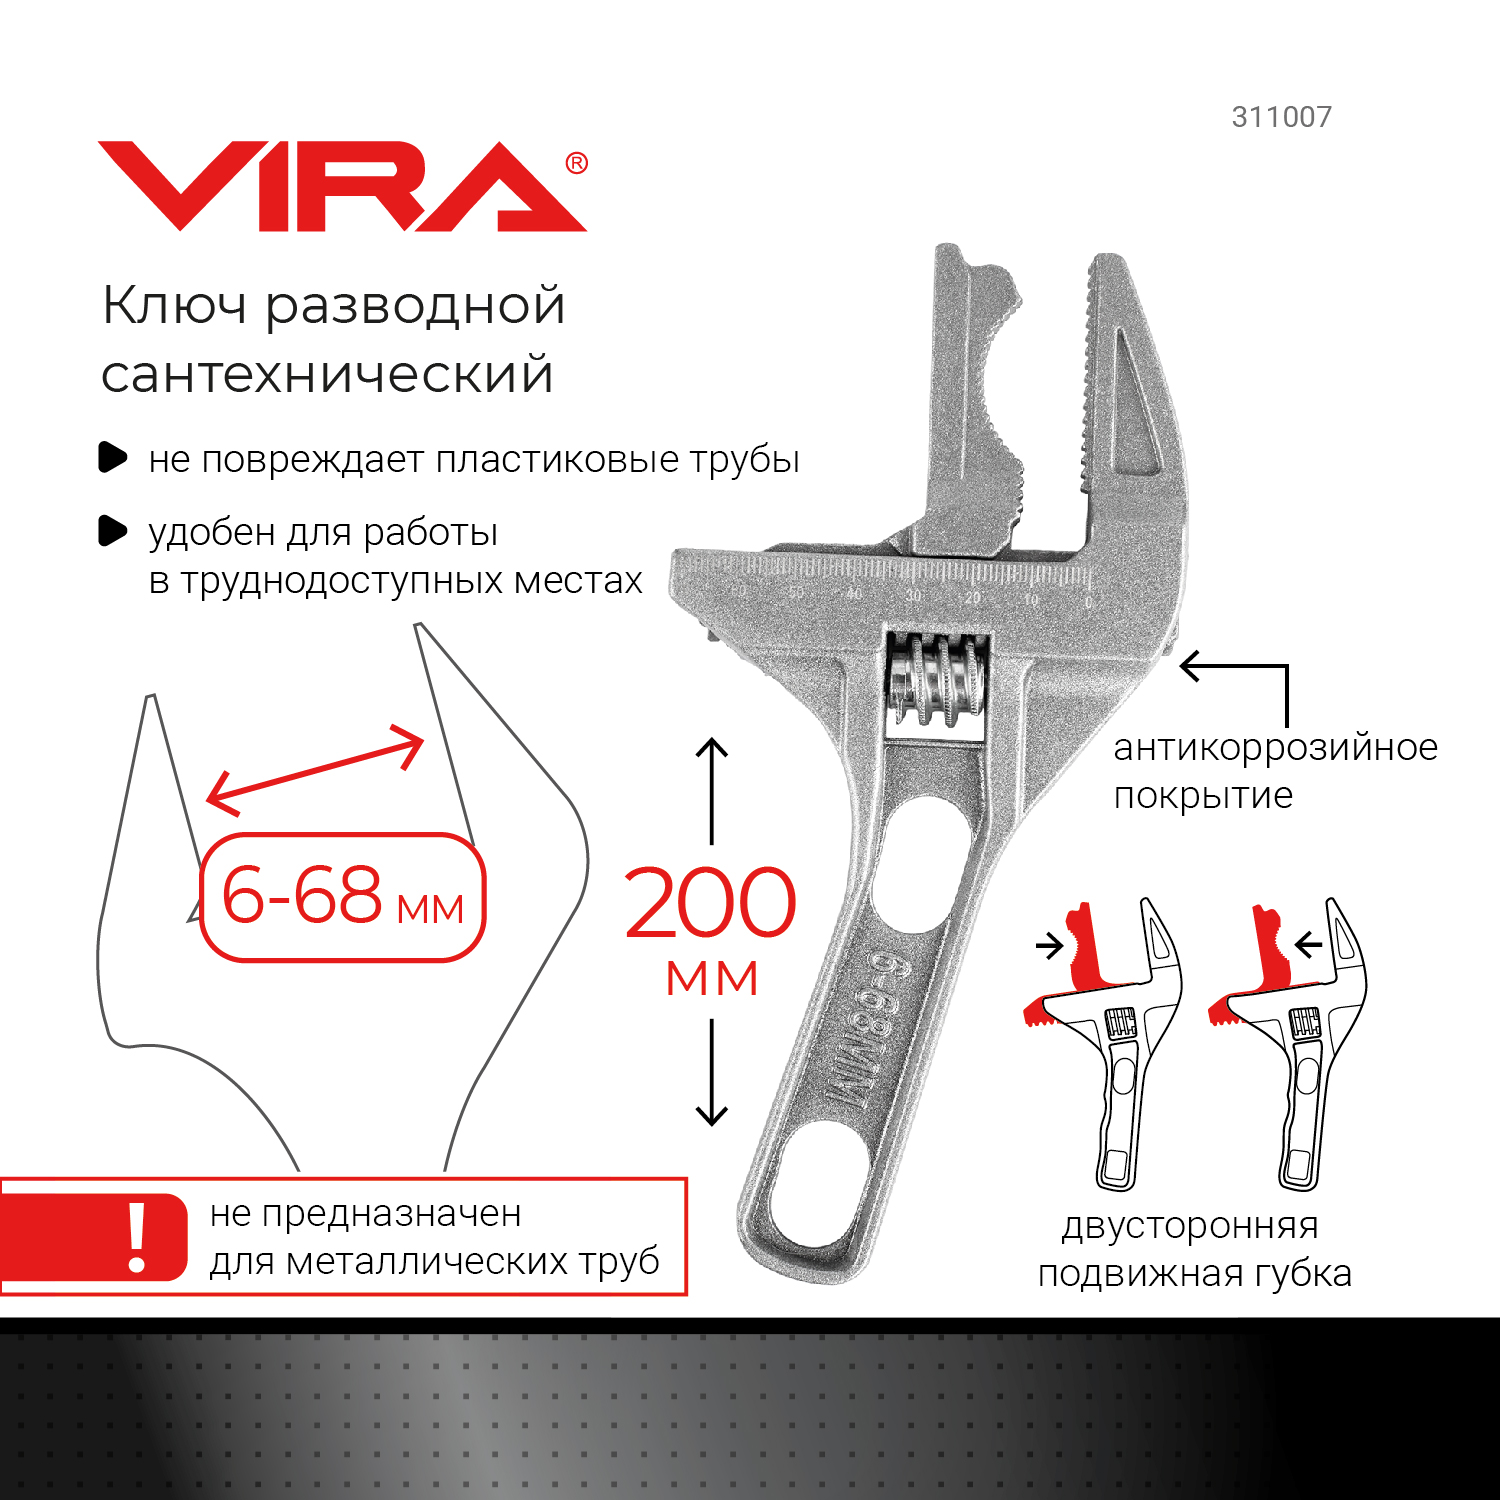 Разводной ключ VIRA 311007 сантехнический 6-68 мм с укороченной ручкой